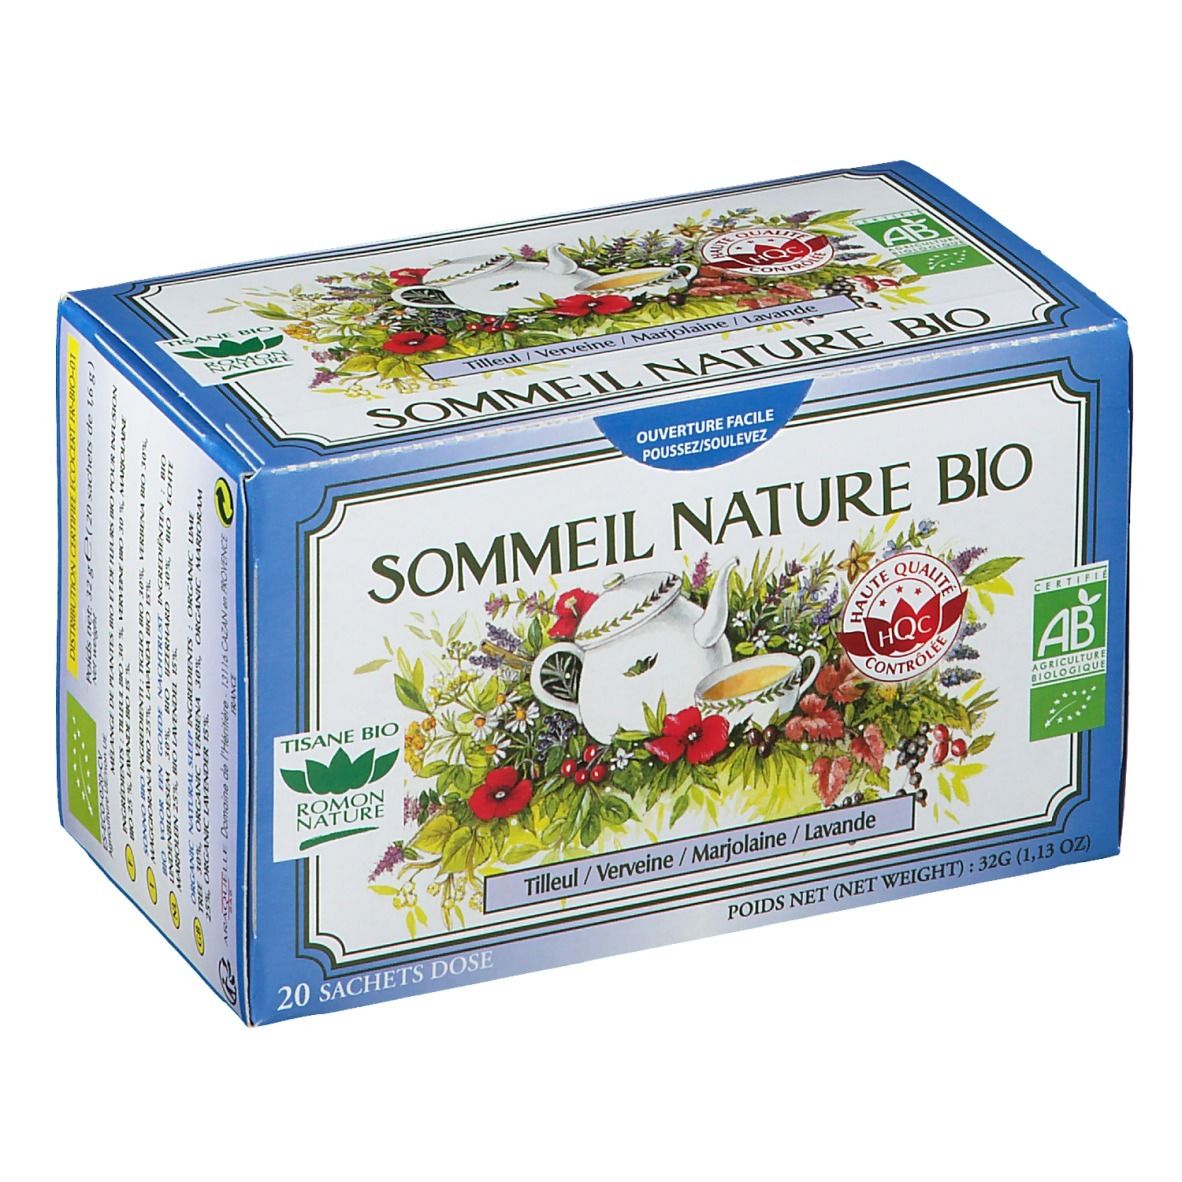 Sommeil Nature Bio Tisane Tilleul + Verveine + Marjolaine + Lavande